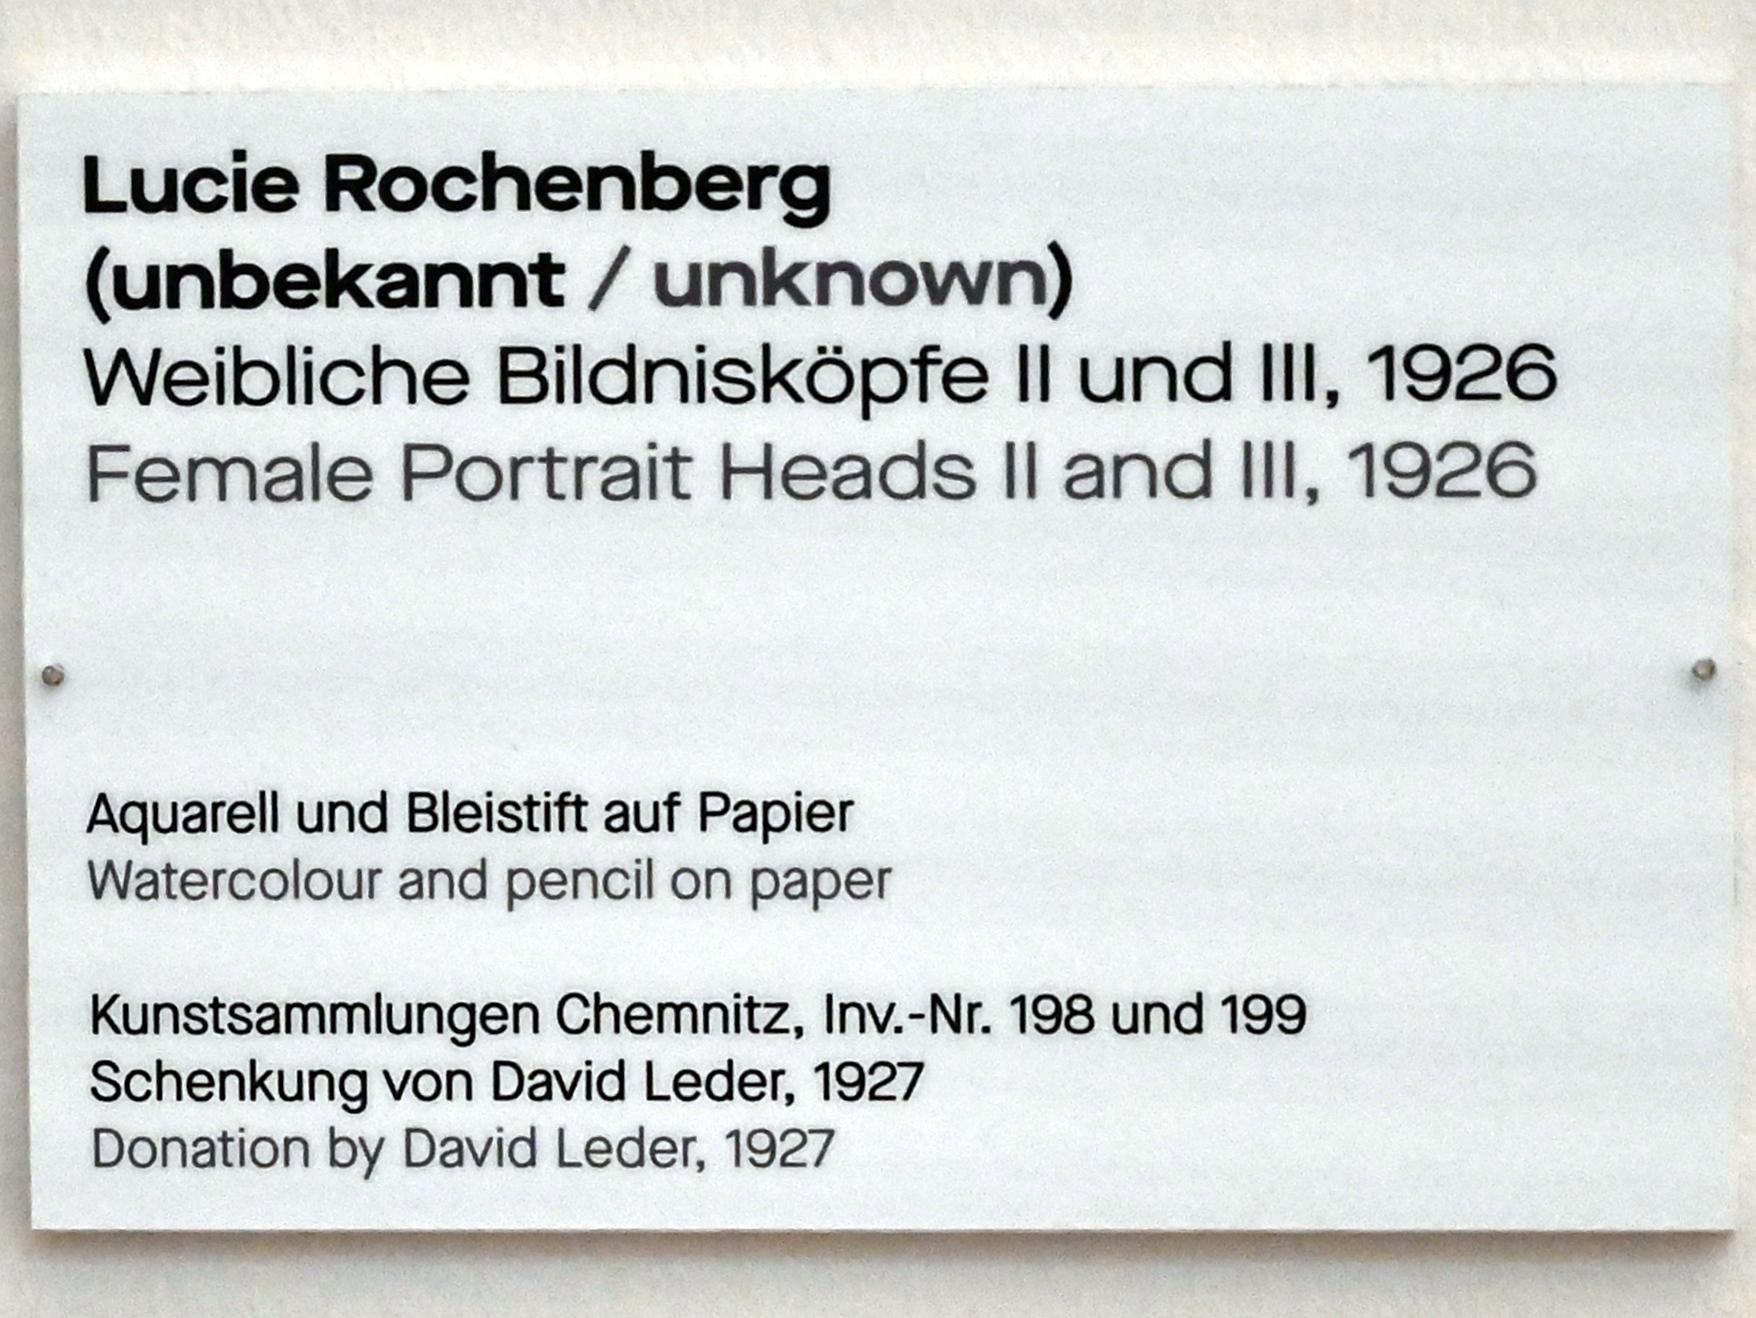 Lucie Rochenberg (1925–1926), Weibliche Bildnisköpfe II, Chemnitz, Kunstsammlungen am Theaterplatz, Saal 1, 1926, Bild 2/2